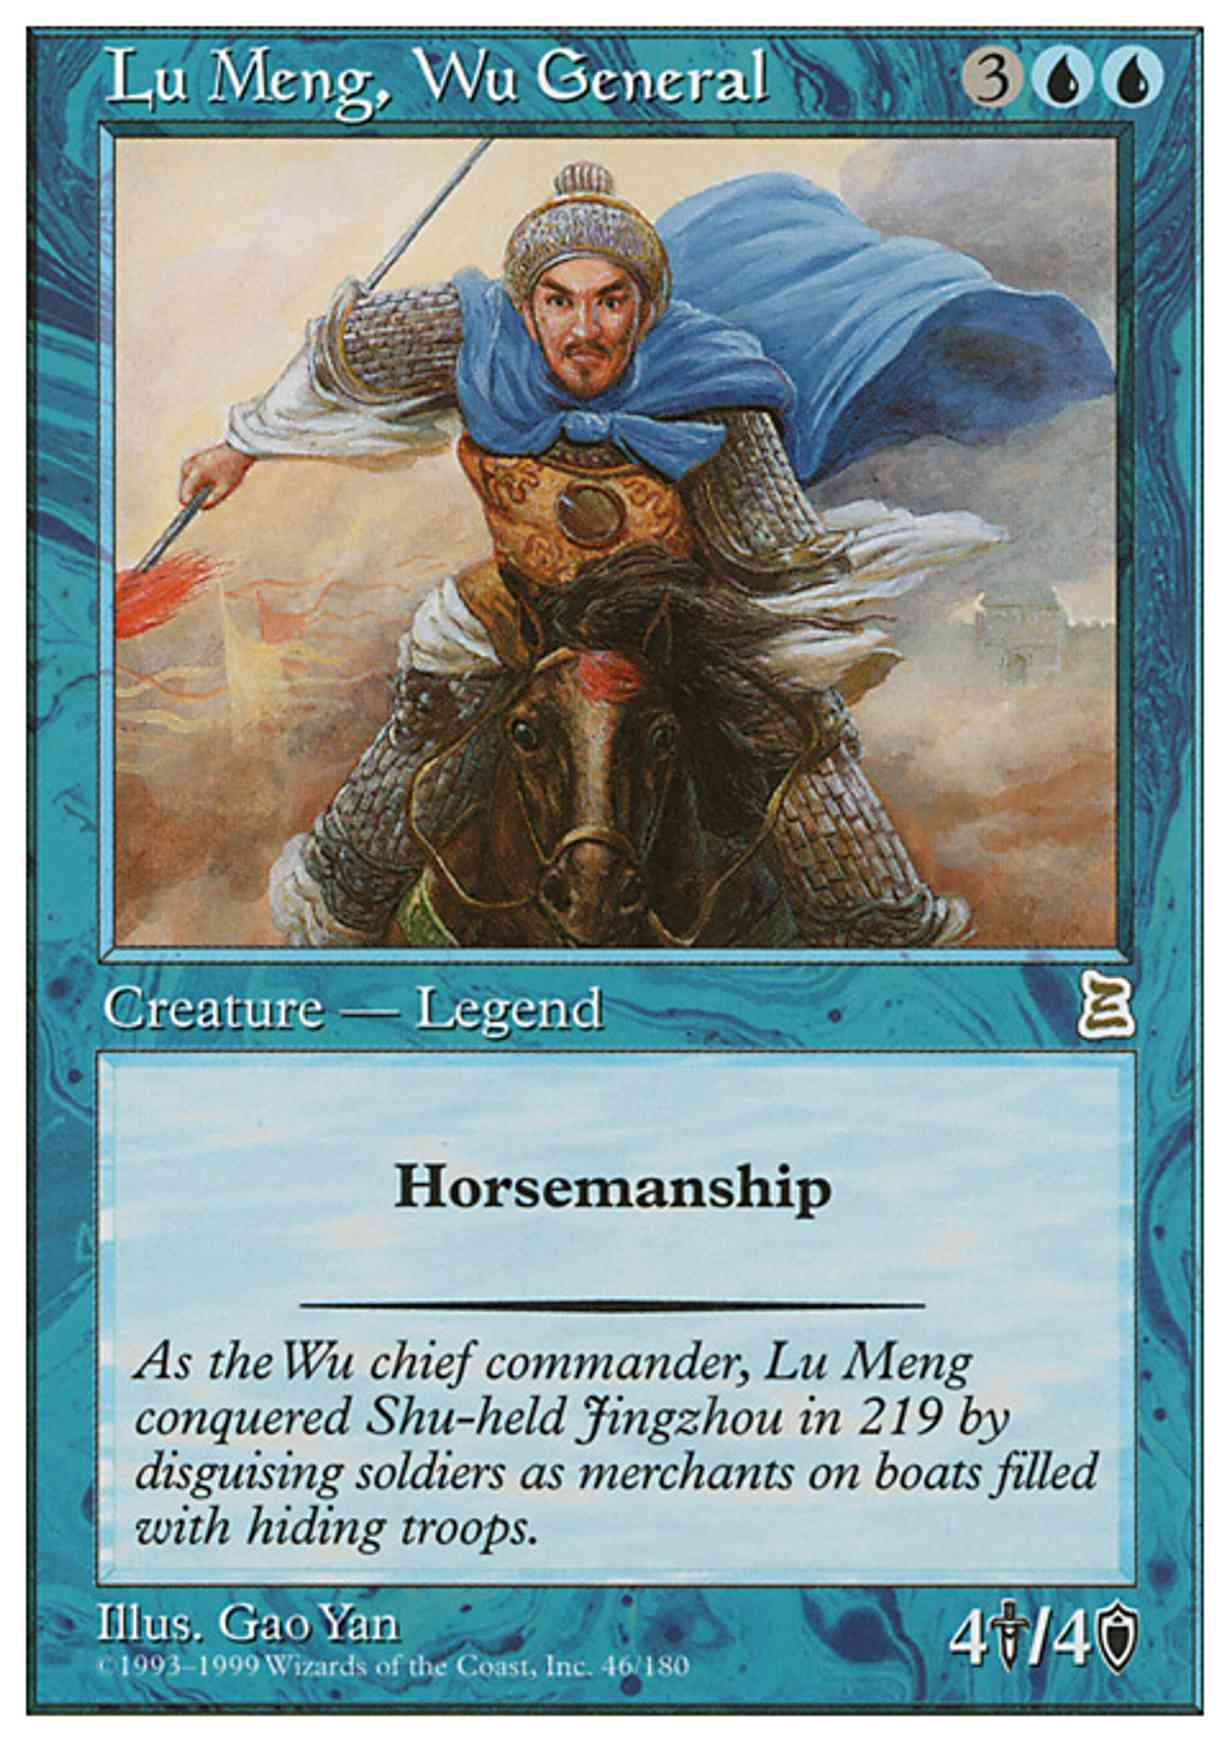 Lu Meng, Wu General magic card front